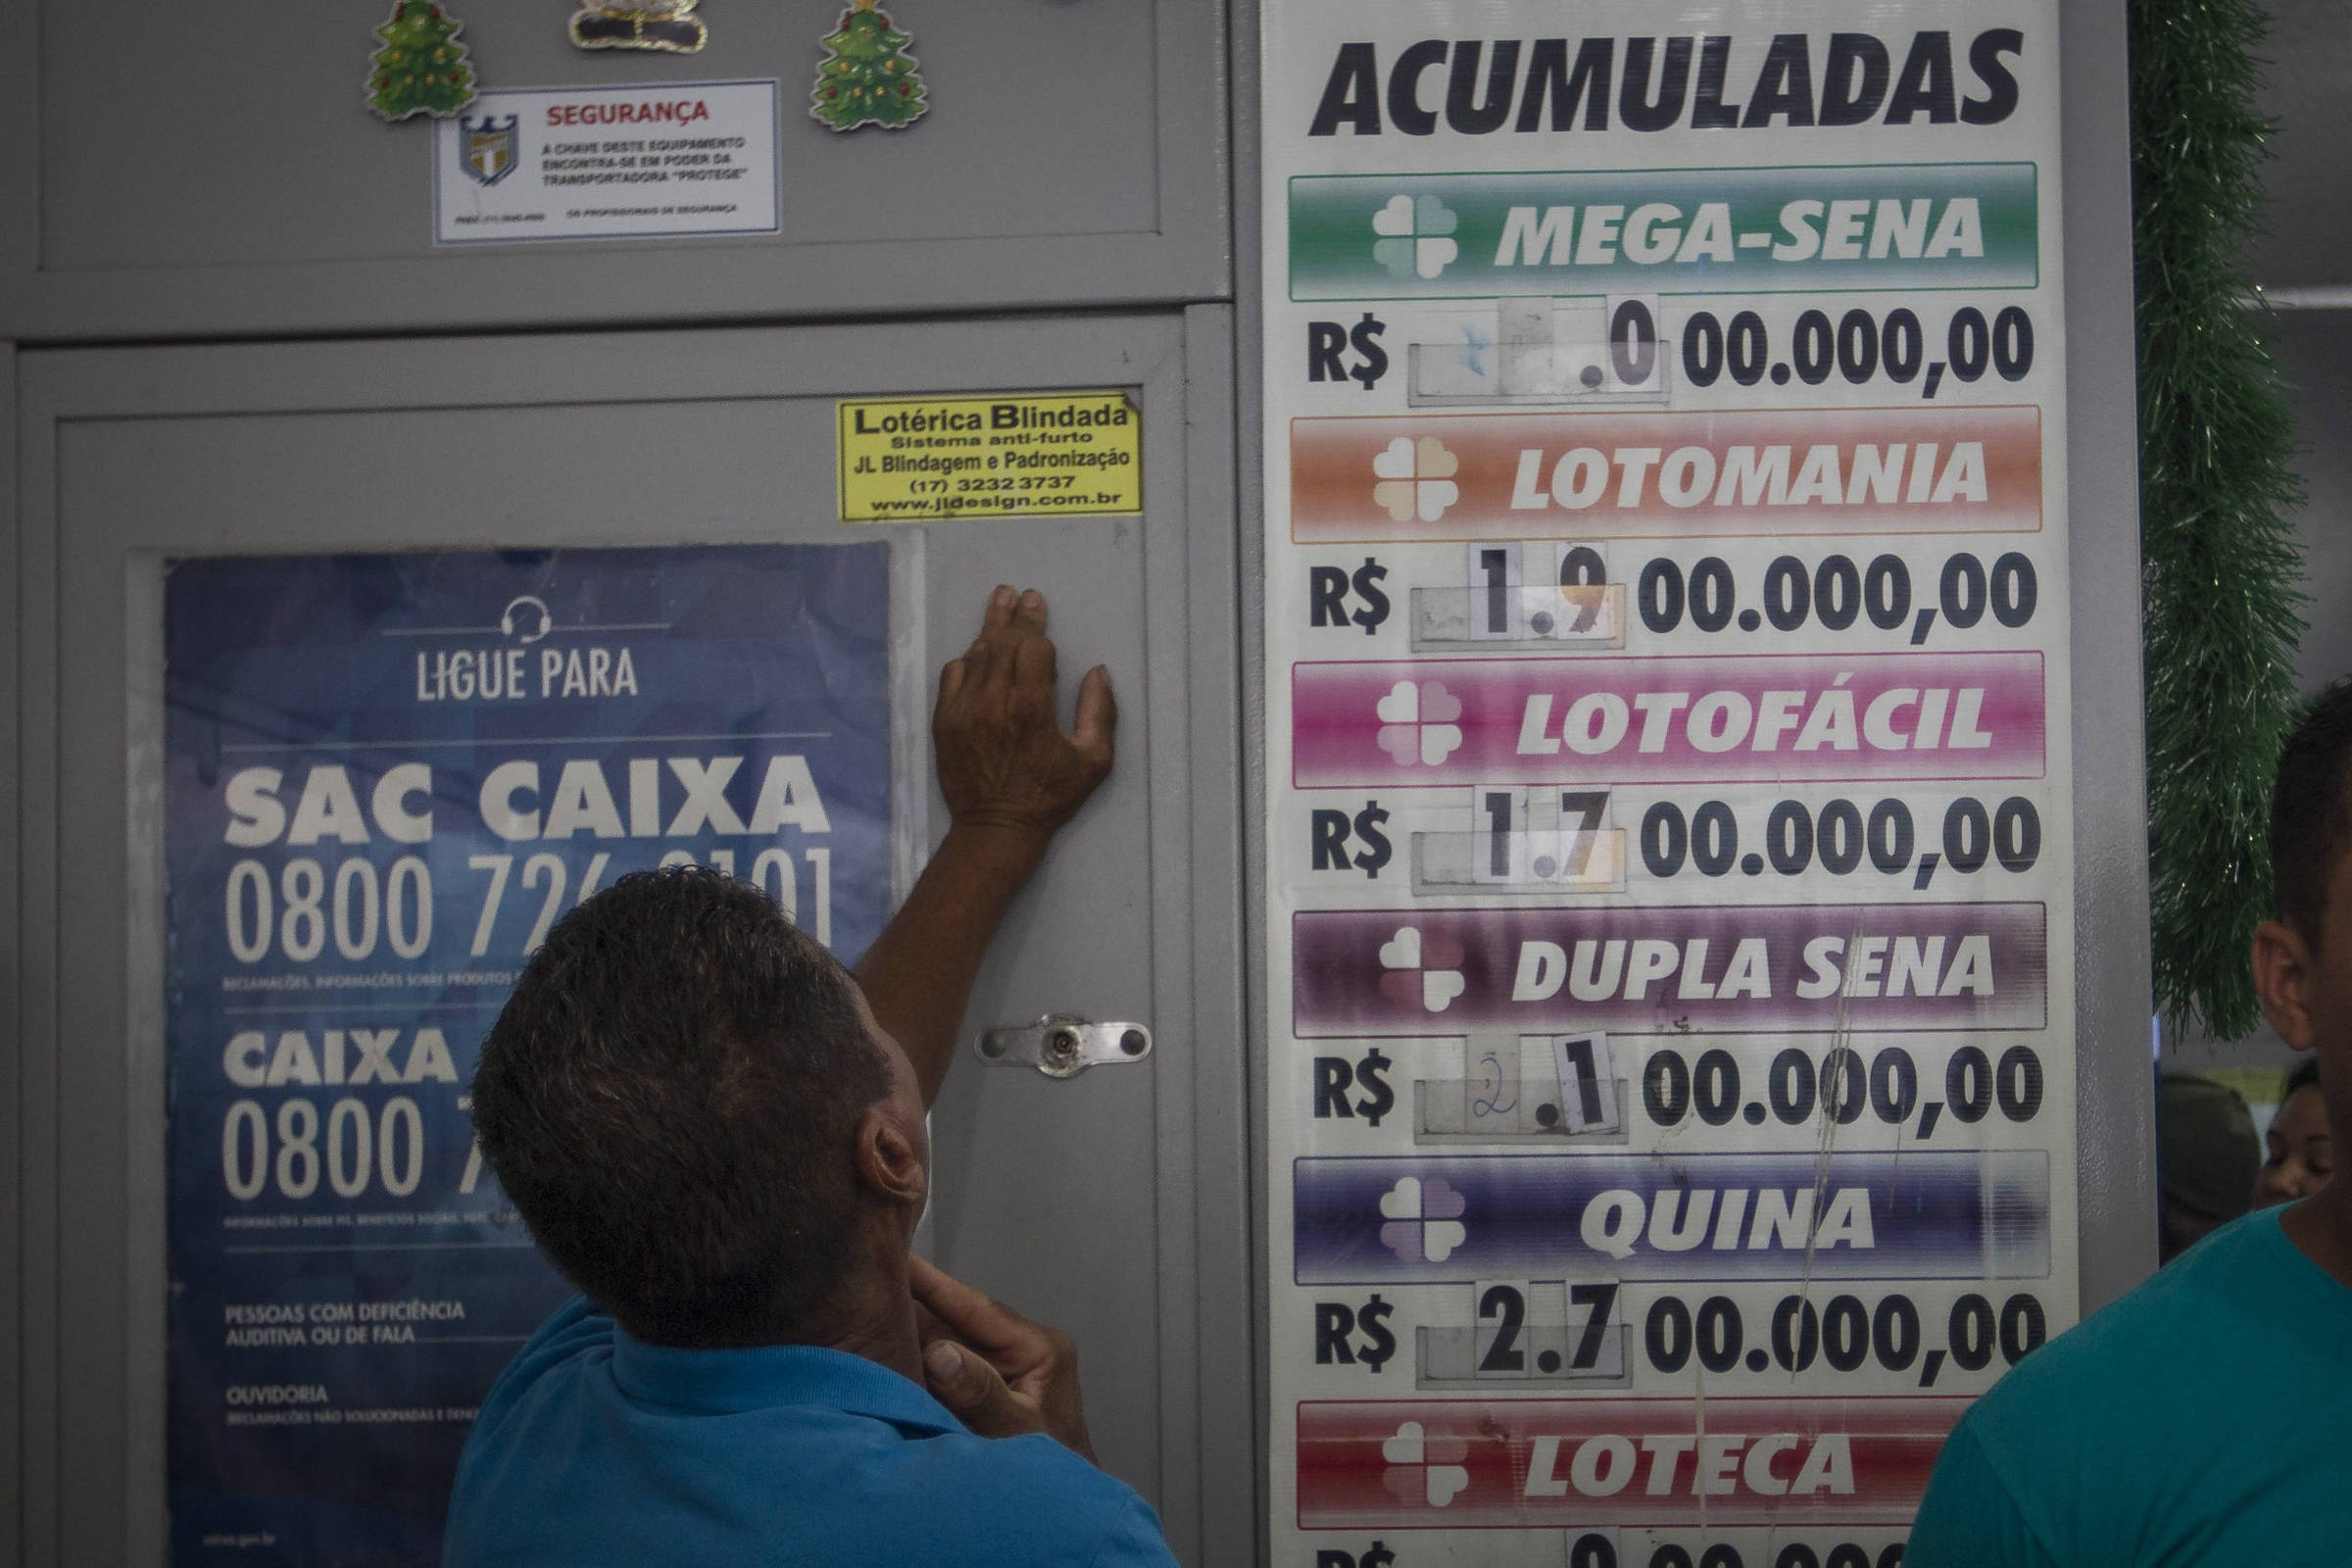 JACAREÍ, SP - 10.08.2018: CAIXA LANÇA SITE PARA APOSTAS ONLINE - Caixa  Econômica Federal launched, this Friday (